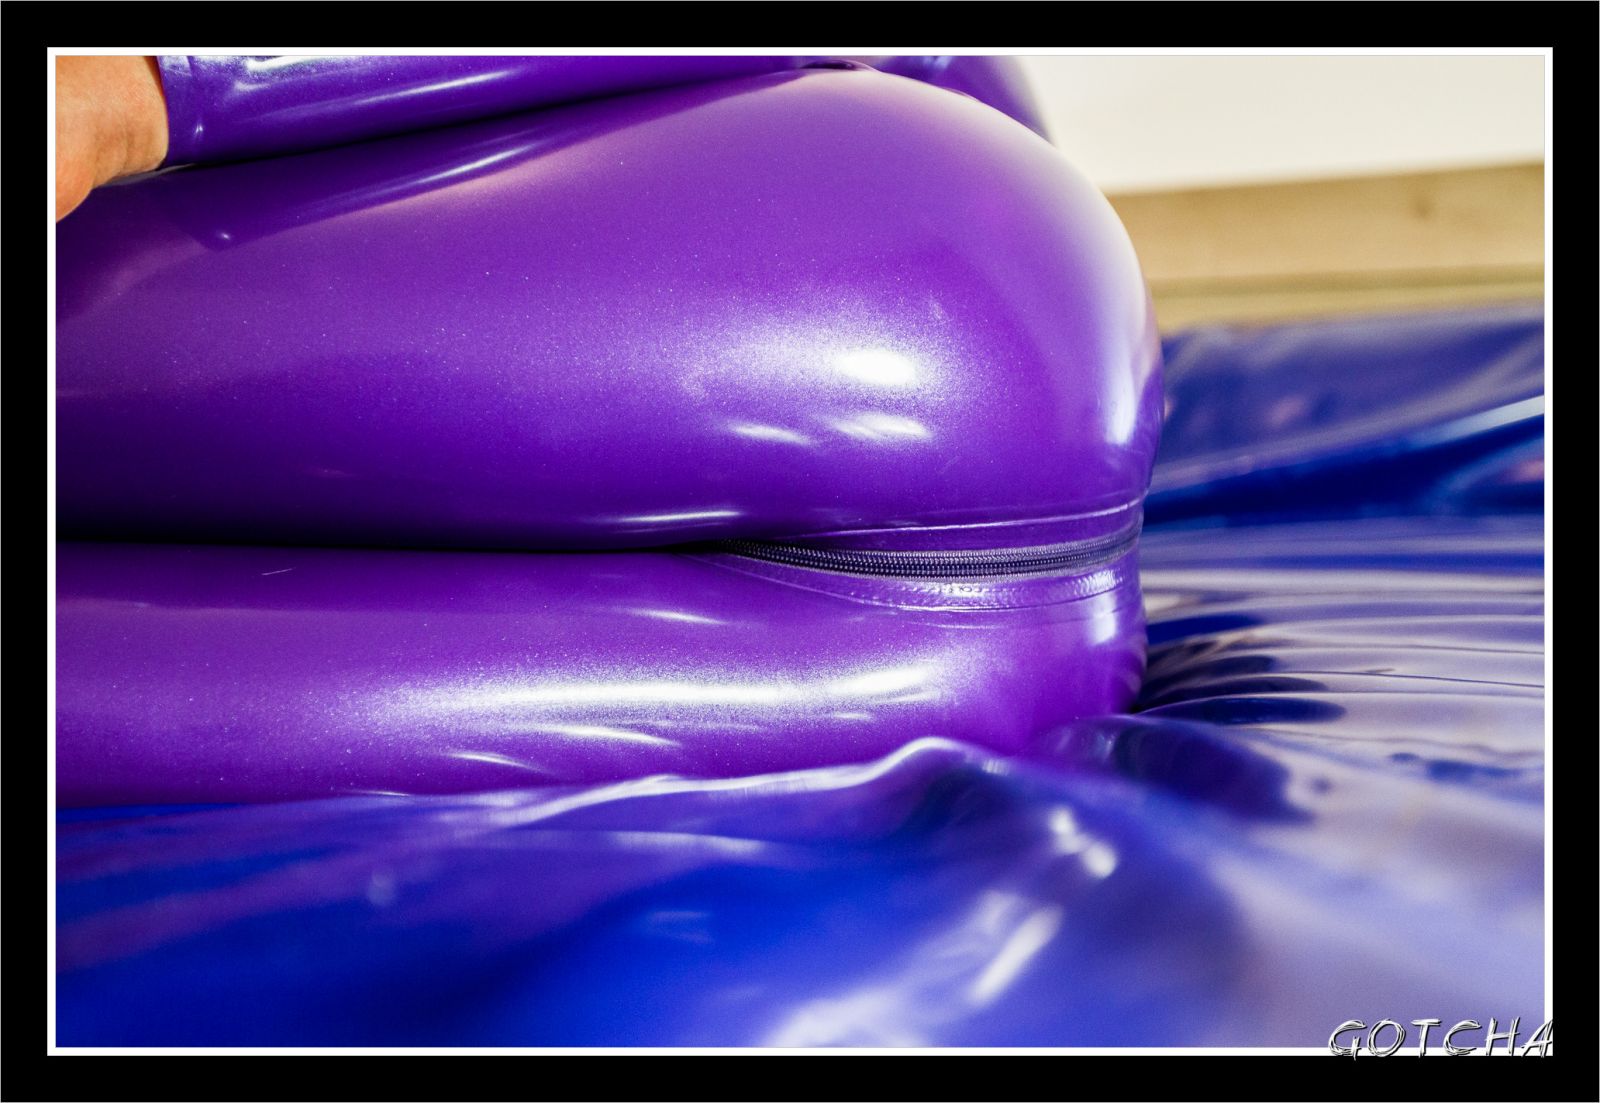 Moi en combi latex violette
Photographié par Gotcha
Mots-clés: latex catsuit